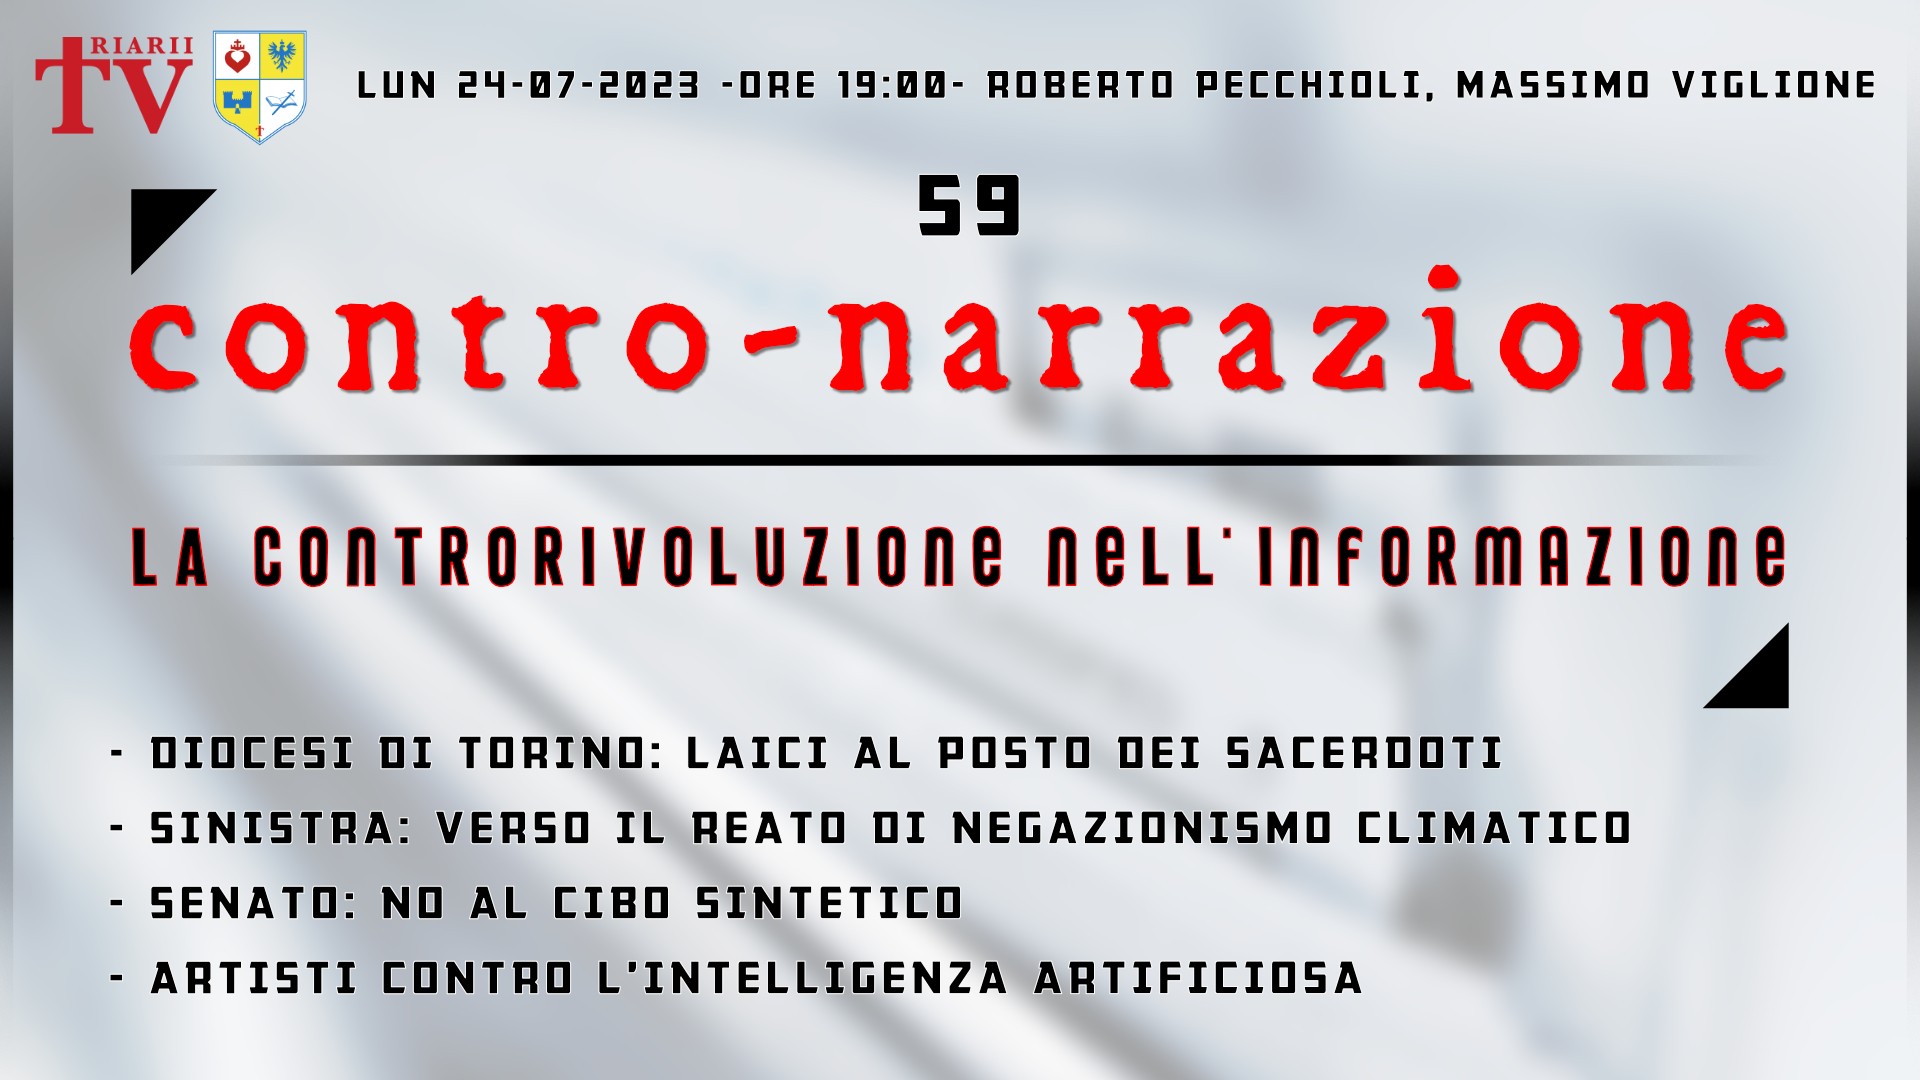 CONTRO-NARRAZIONE NR.59 - LUN 24 LUGLIO 2023 - Roberto Pecchioli, Massimo Viglione